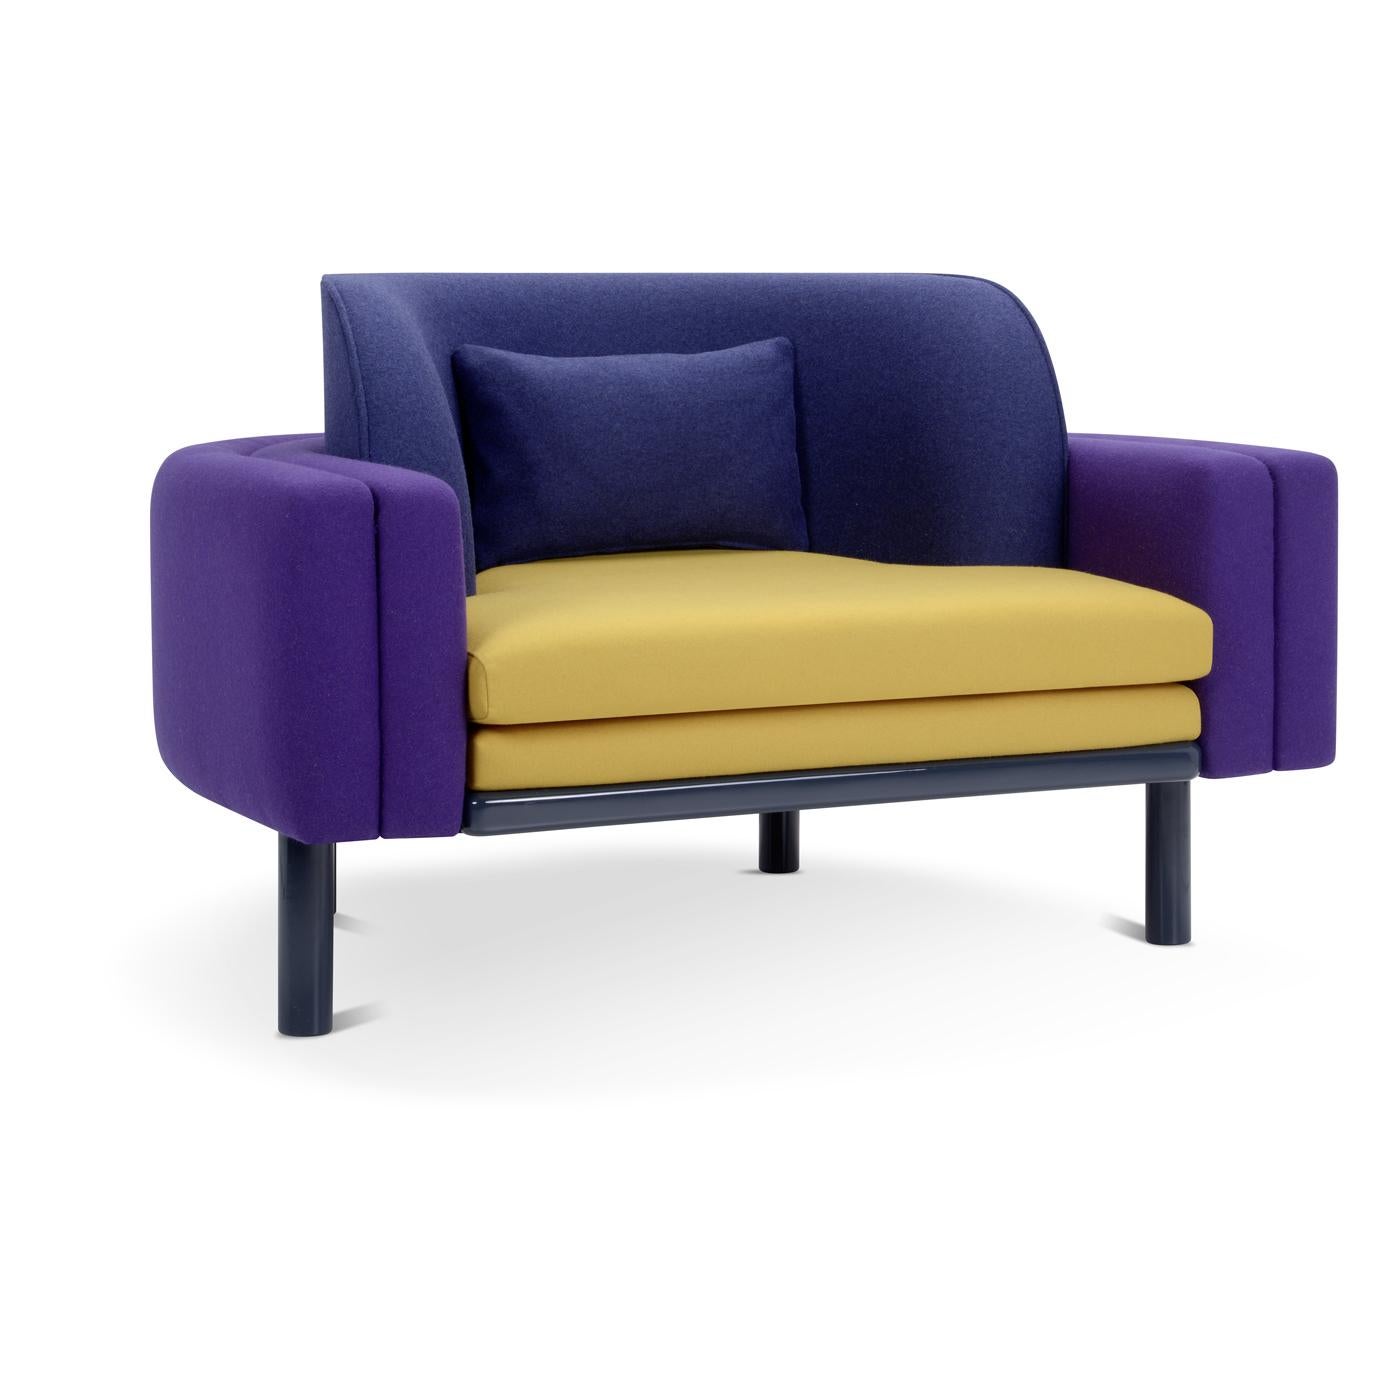 Komfort, Design, Kreativität - eine perfekte Kombination, die in diesem kultigen Sessel zum Leben erwacht. Es stehen viele Farben zur Verfügung: weiß, gelb, orange, rot, lila, rosa, grau, hellblau, blau, grün, braun und schwarz, die je nach Bedarf